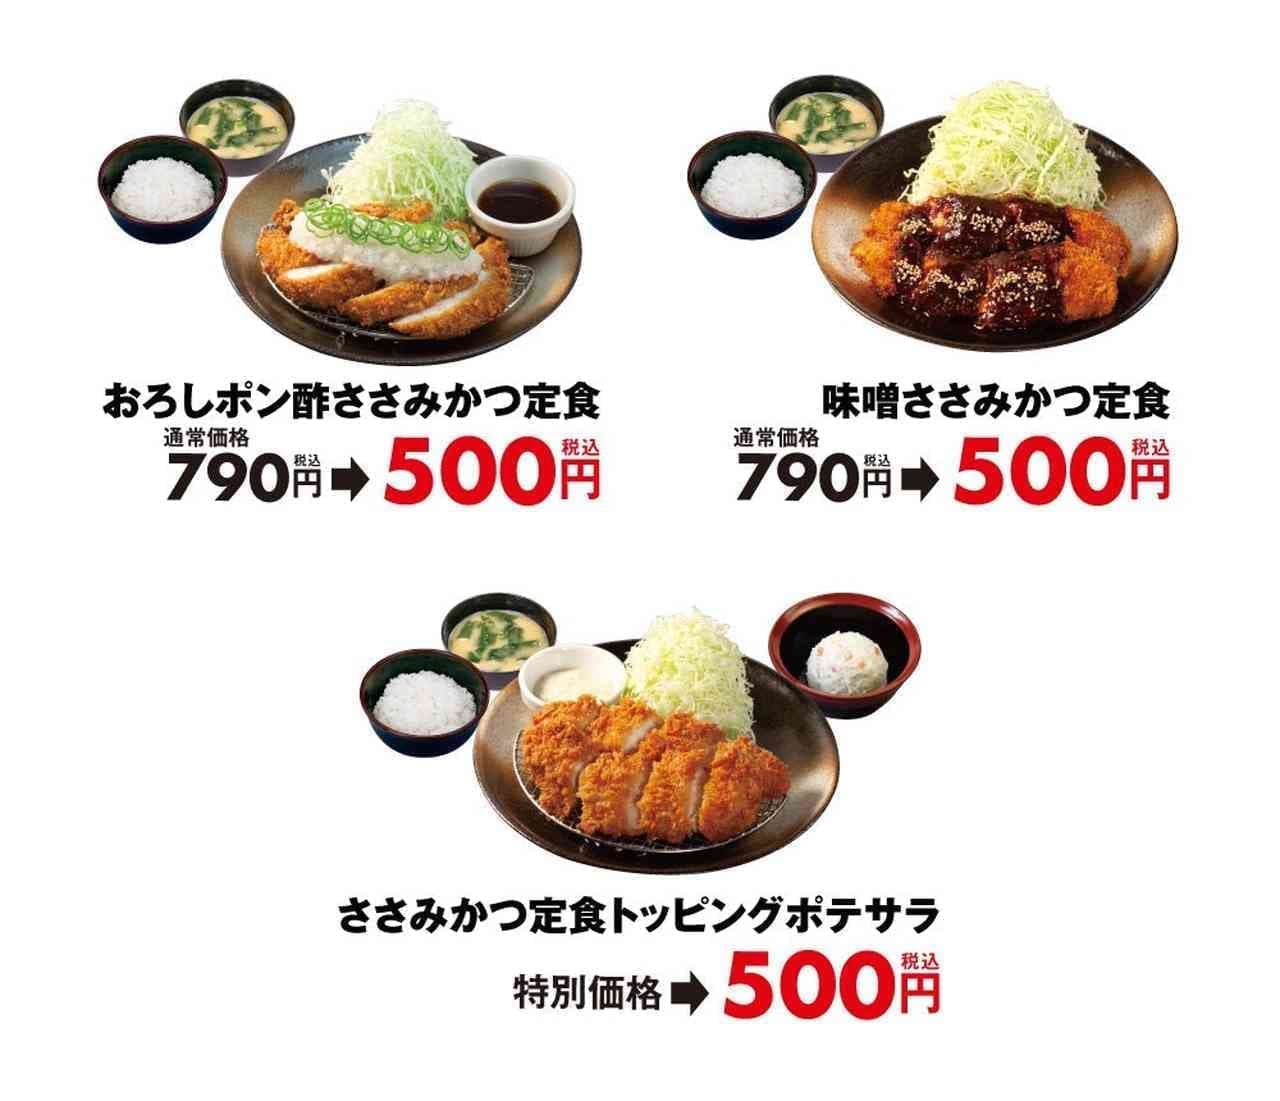 松のや “ささみかつ500円SALE”